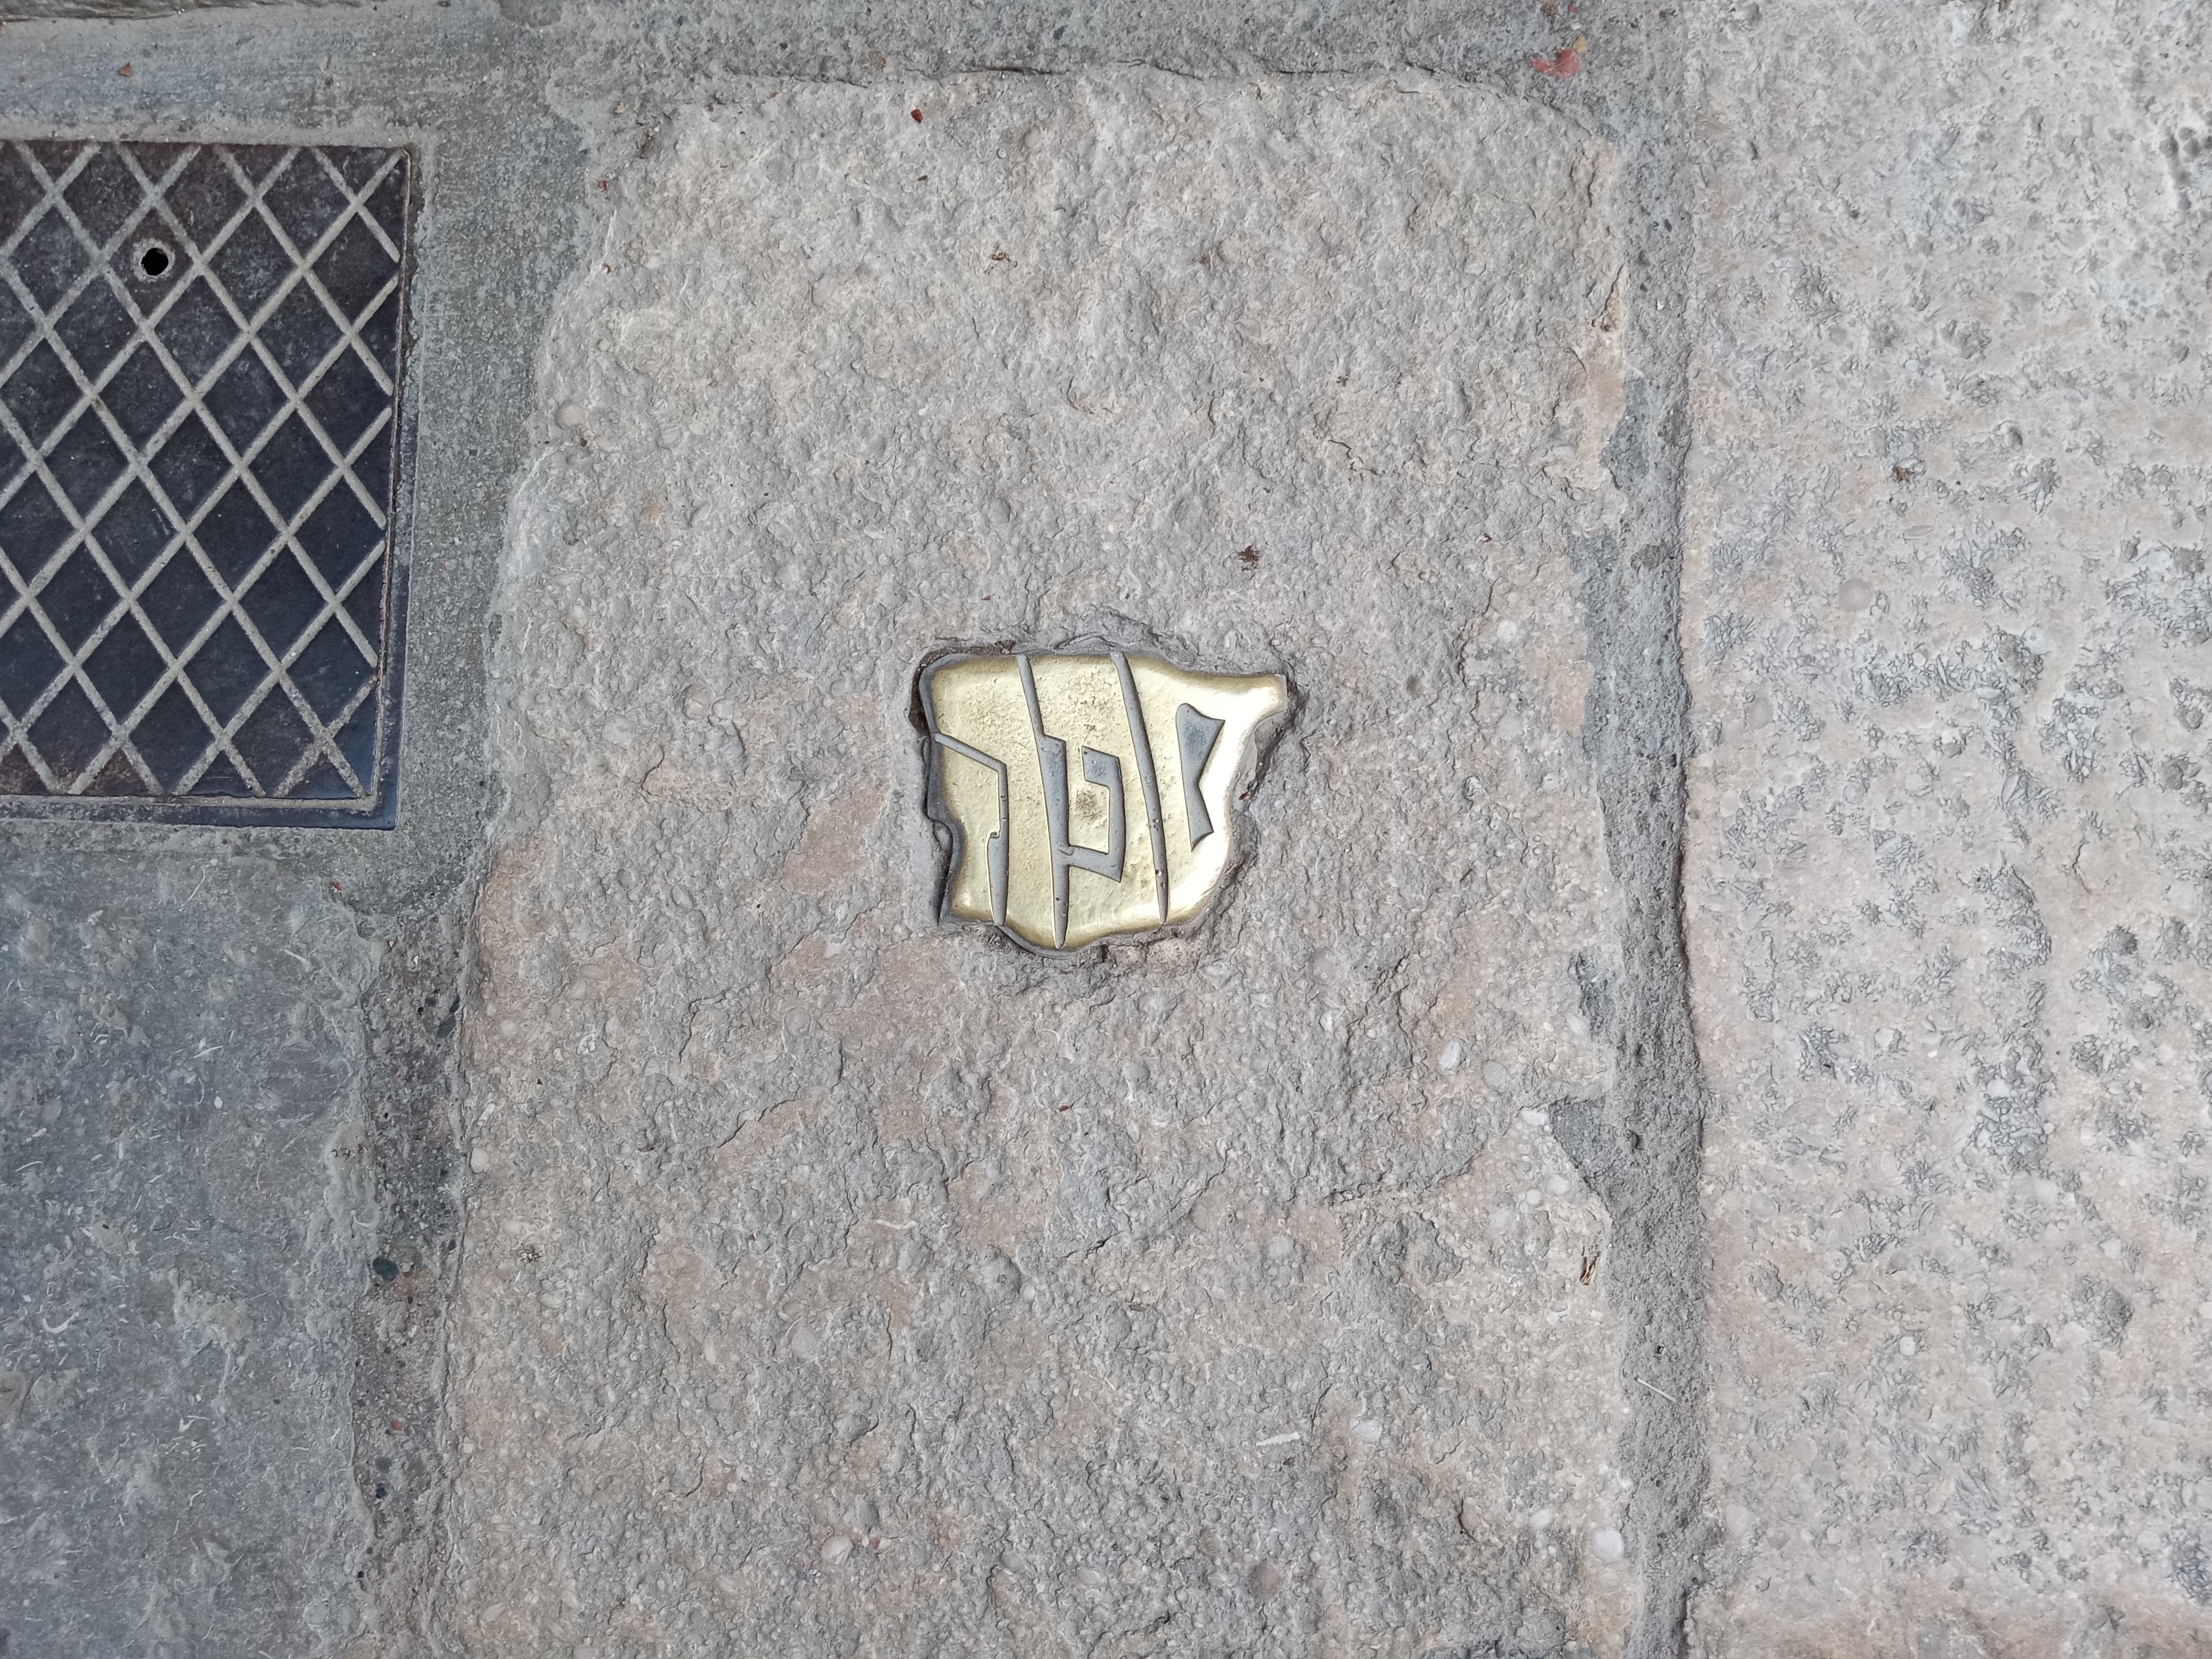 Girona: Threshold to Jewish Museum